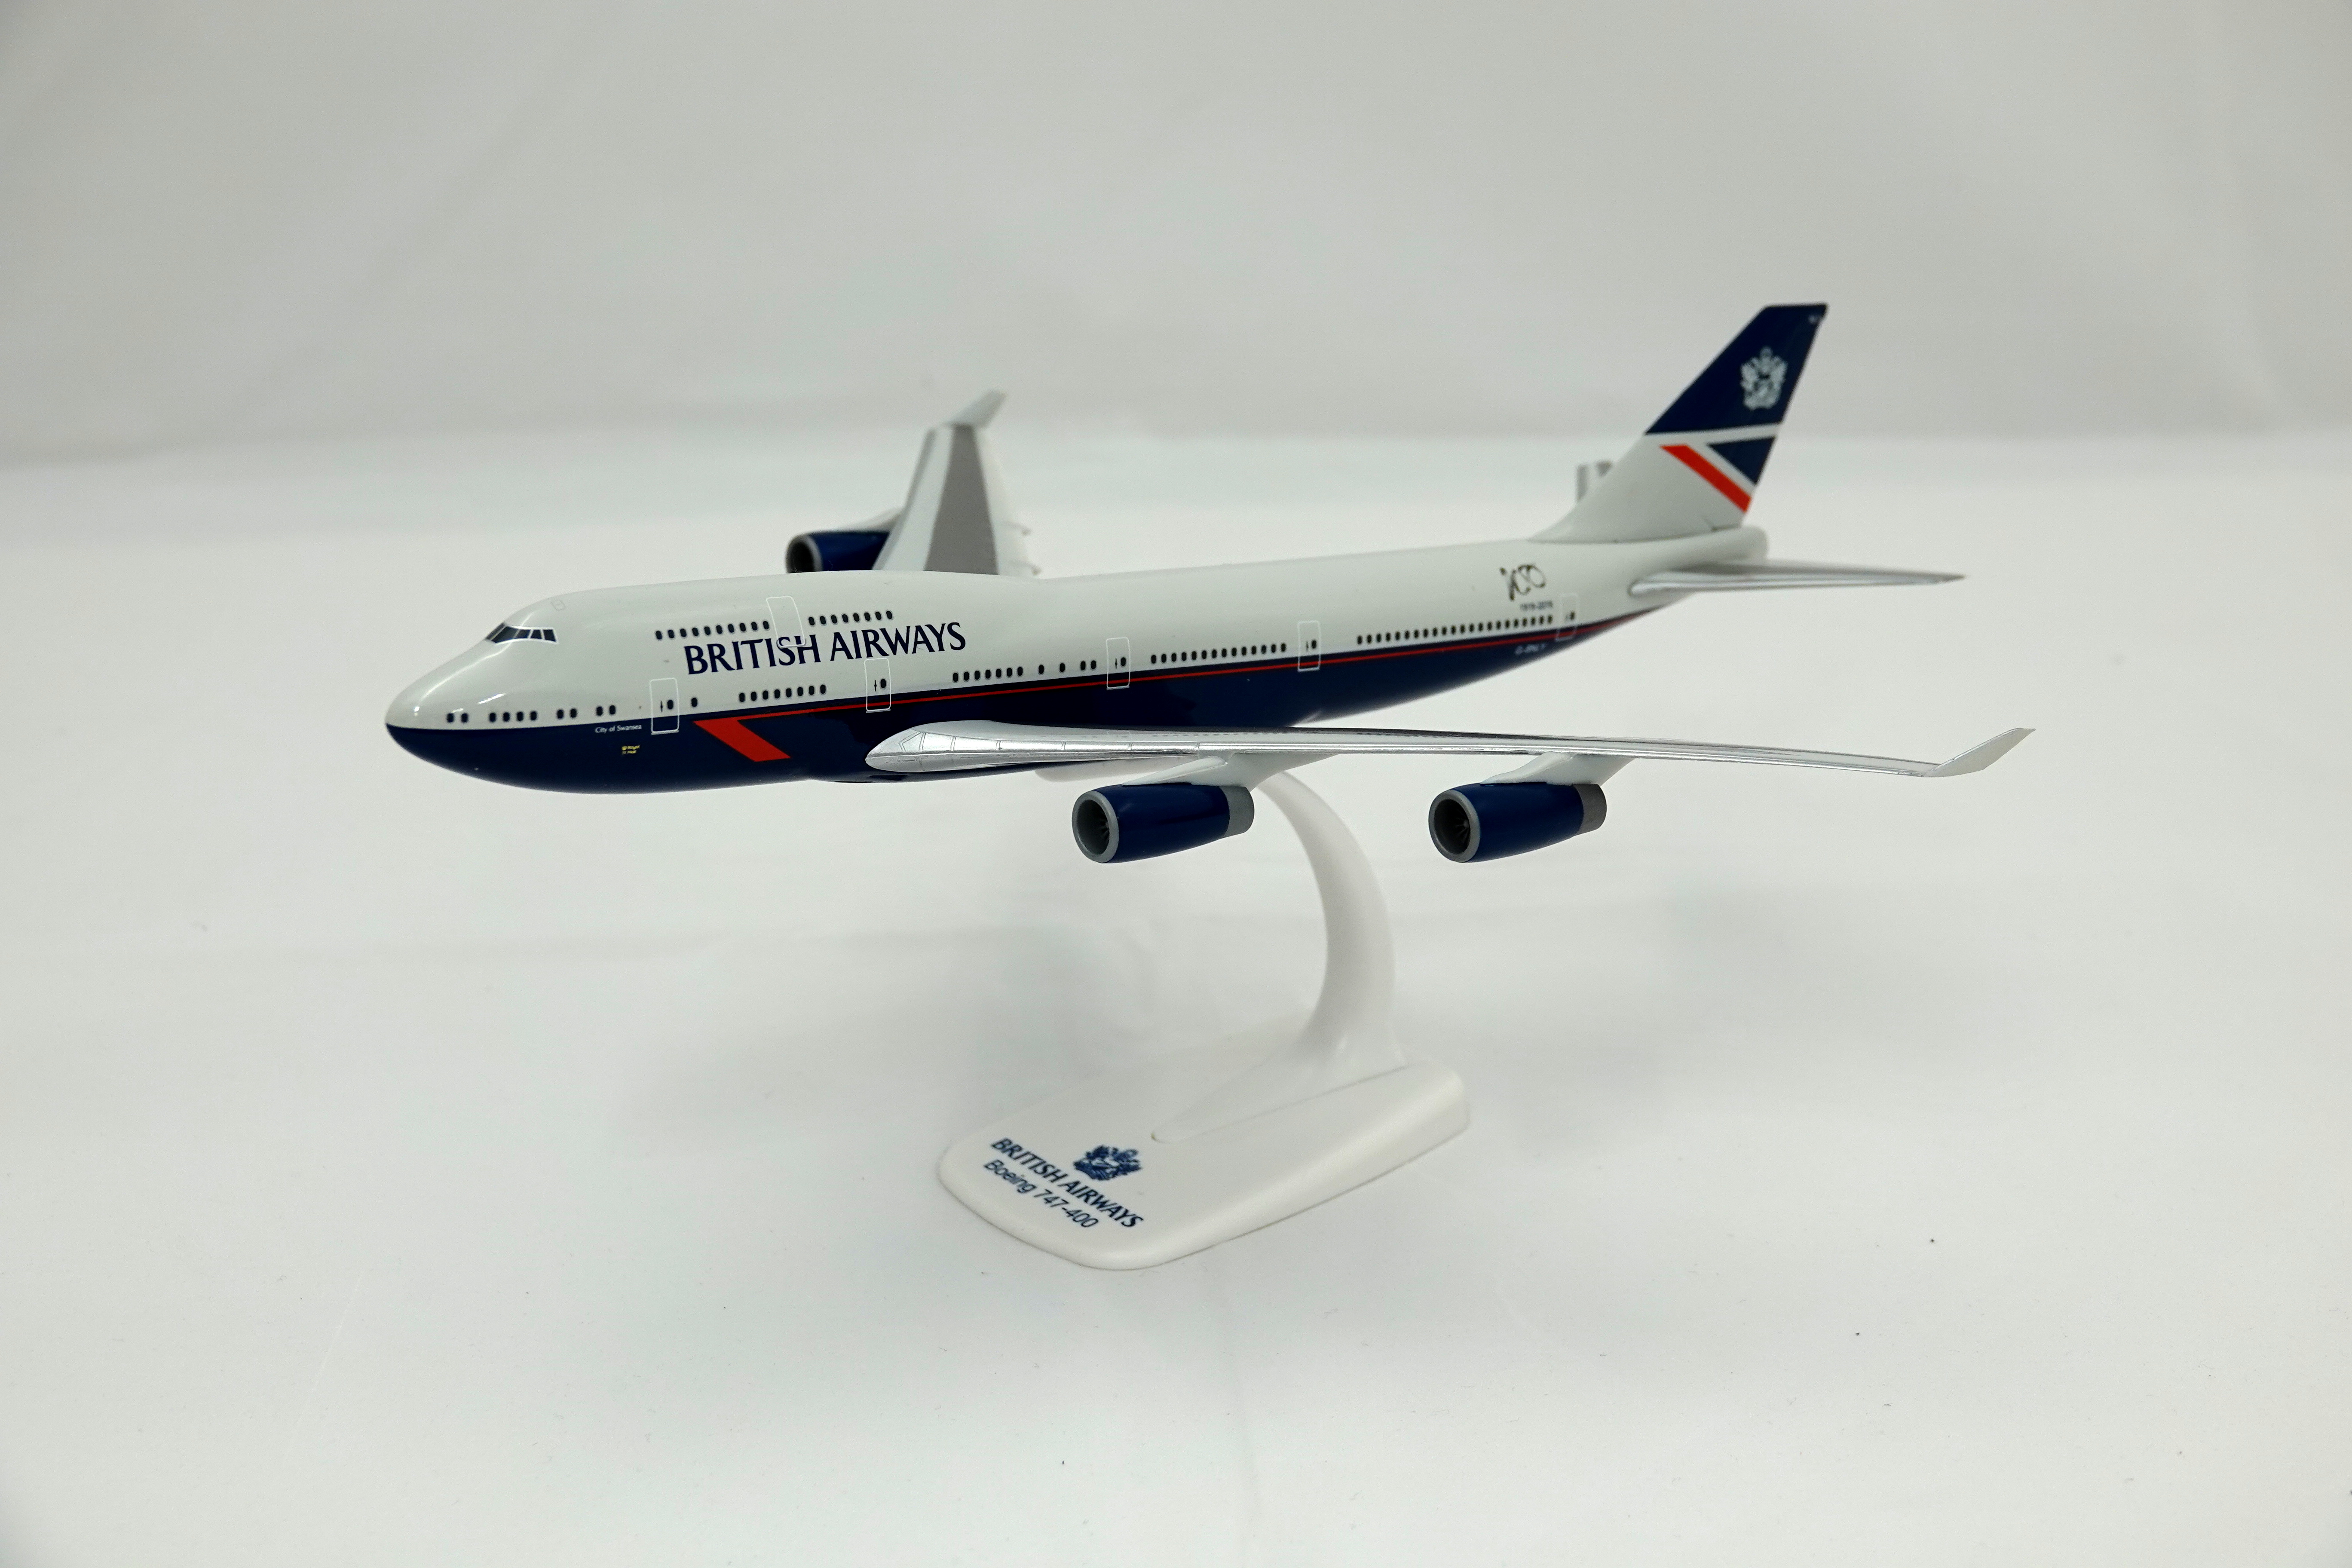 British Airways (Landor) Boeing 747-400